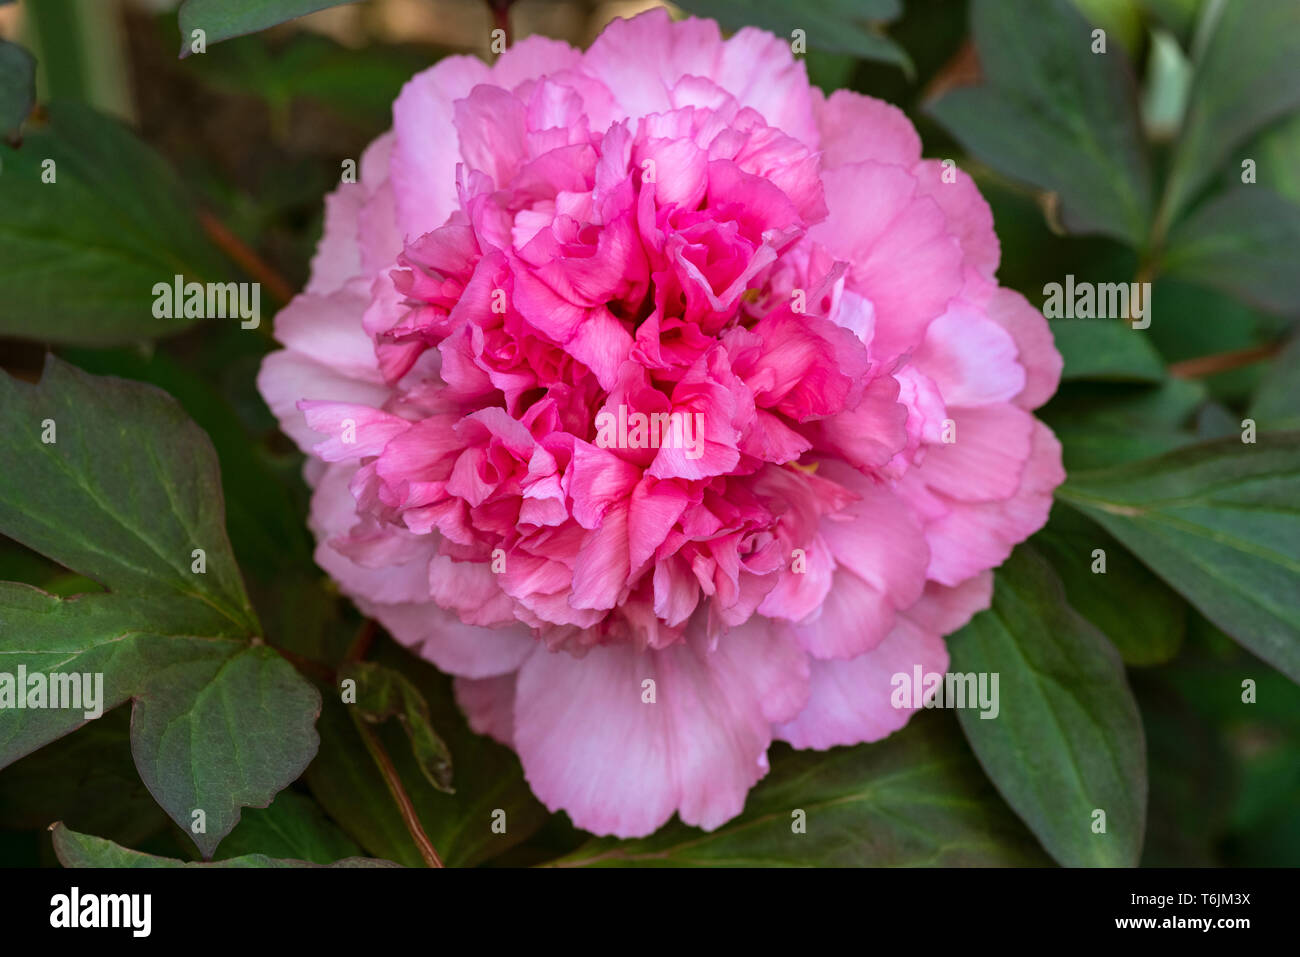 Paeonia suffruticosa, Yin Hong Qiao Dui, tree peony Yin Hong Qiao Dui, Paeoniaceae. Pink flower Stock Photo